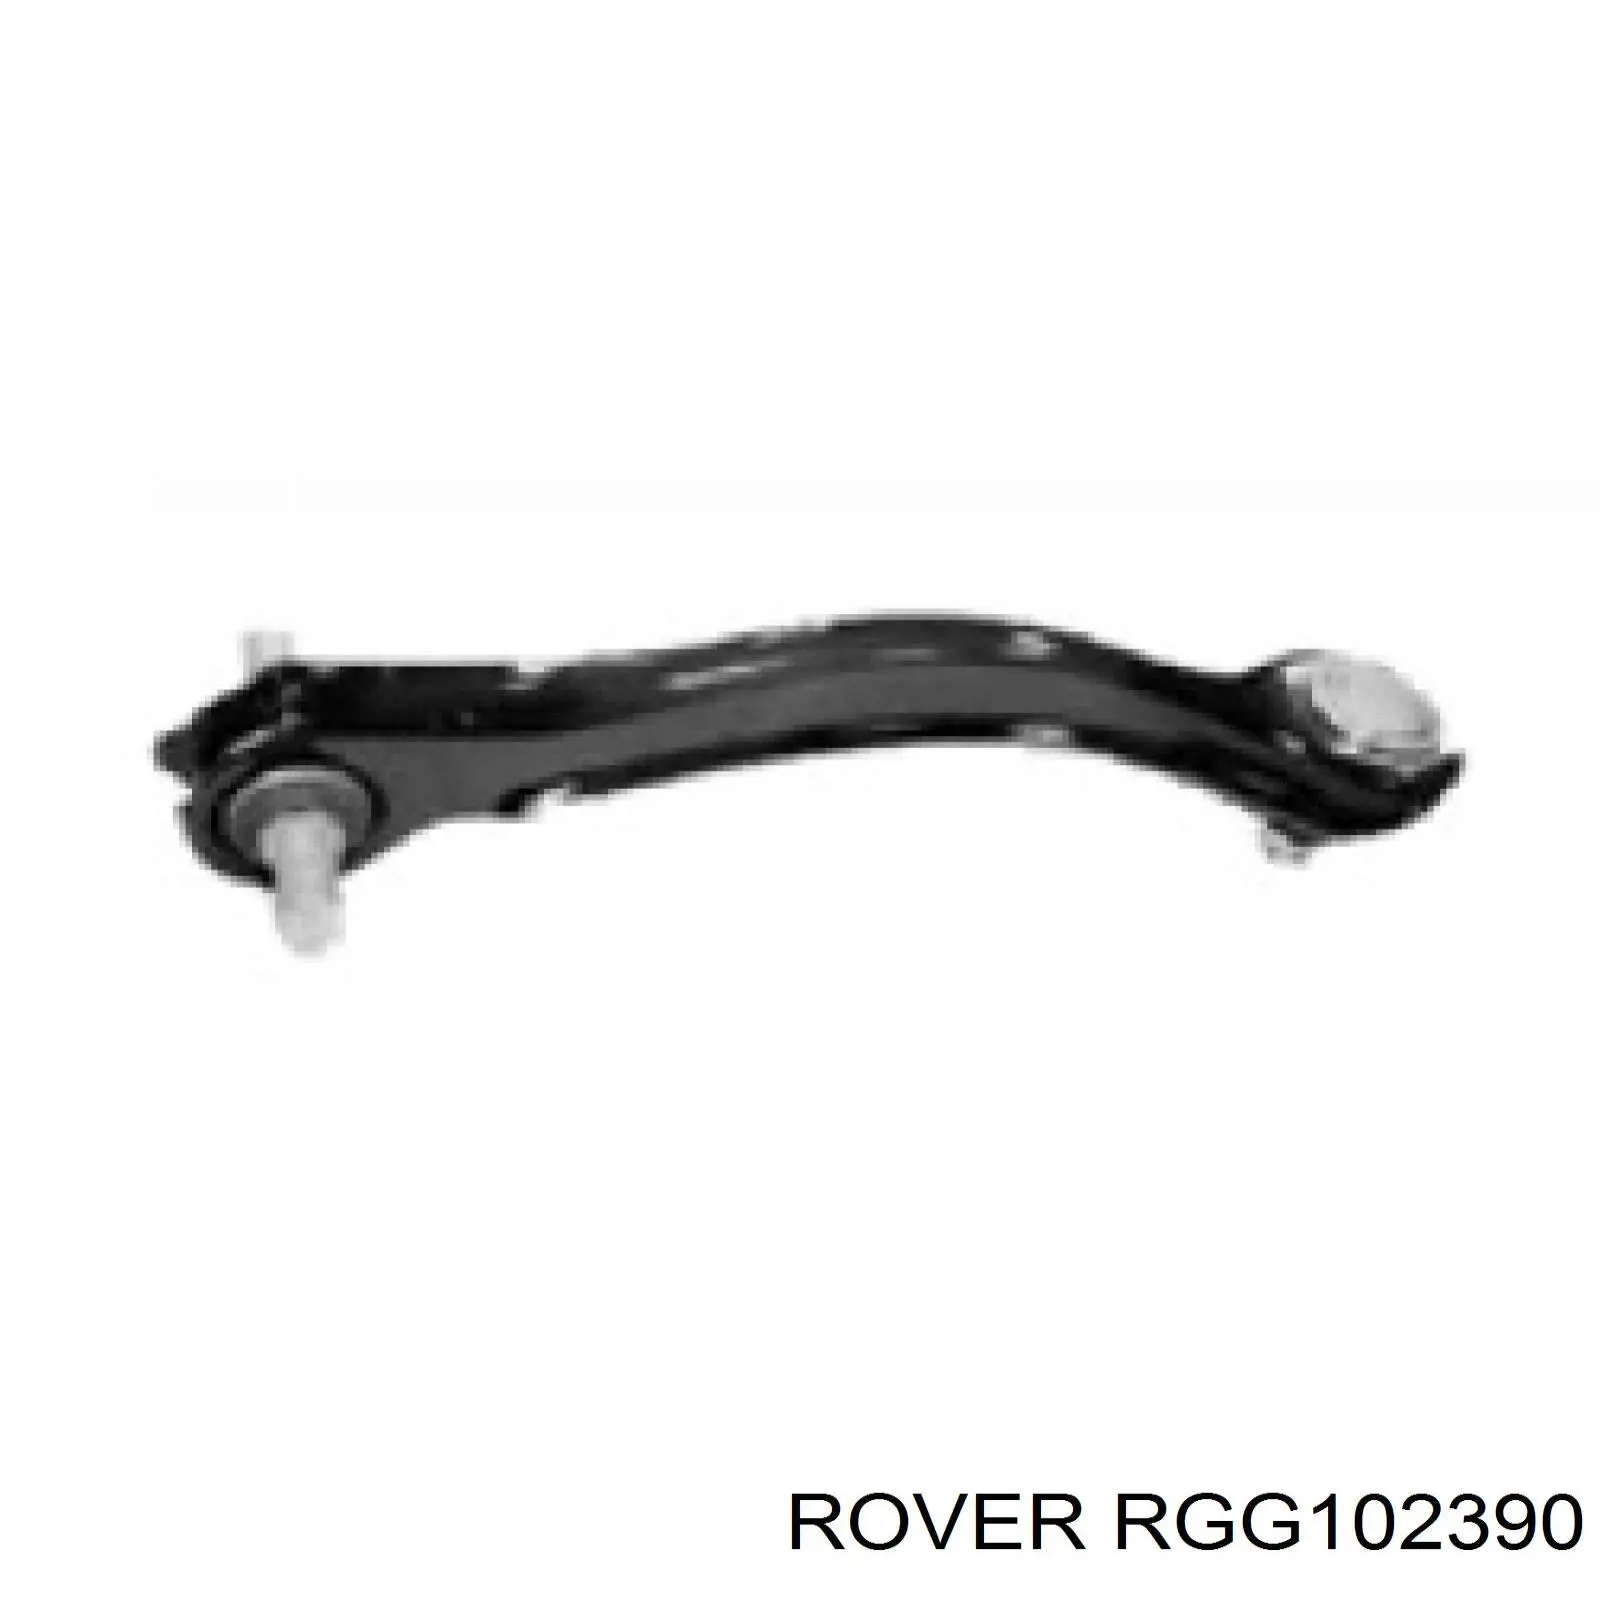 RGG102390 Rover важіль задньої підвіски верхній, правий